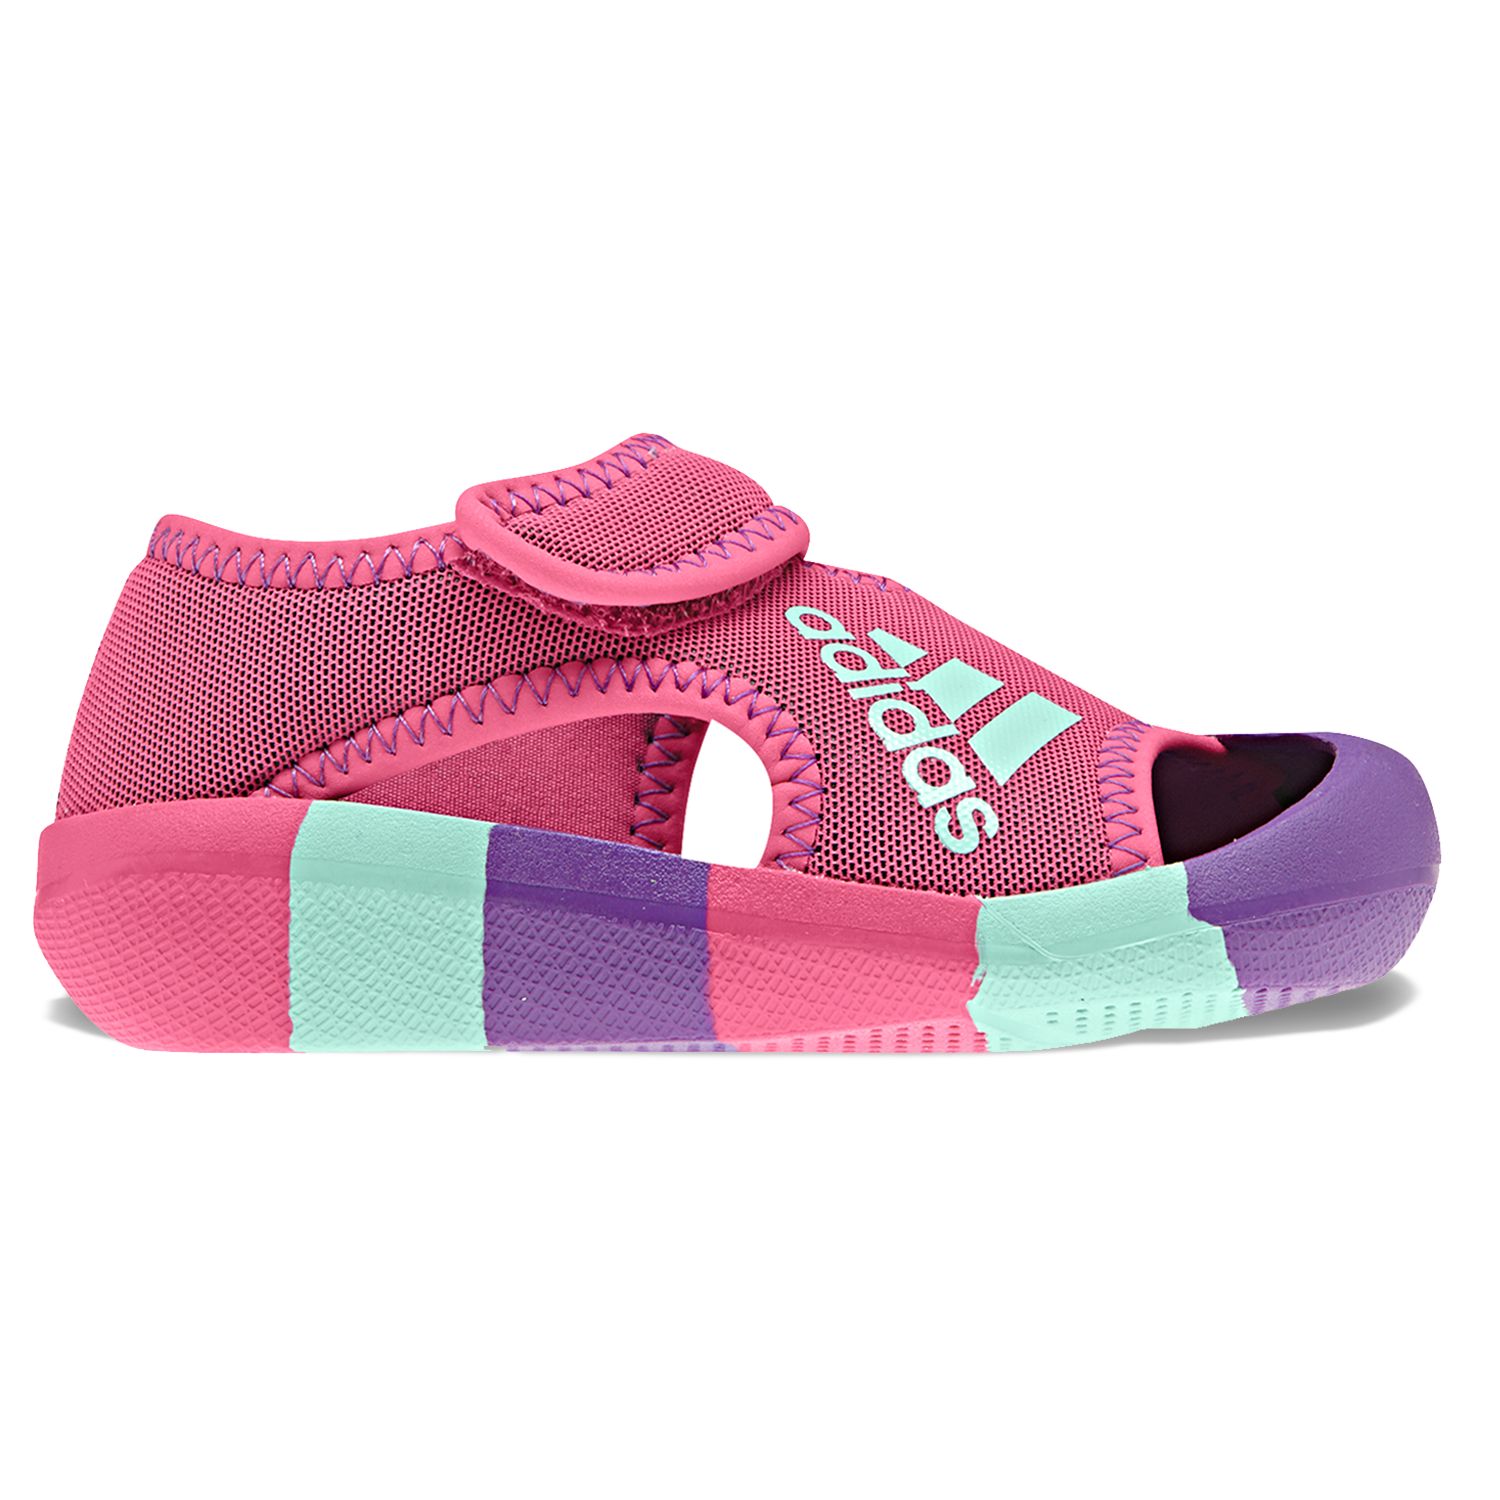 adidas AltaVenture Girls' Sandals